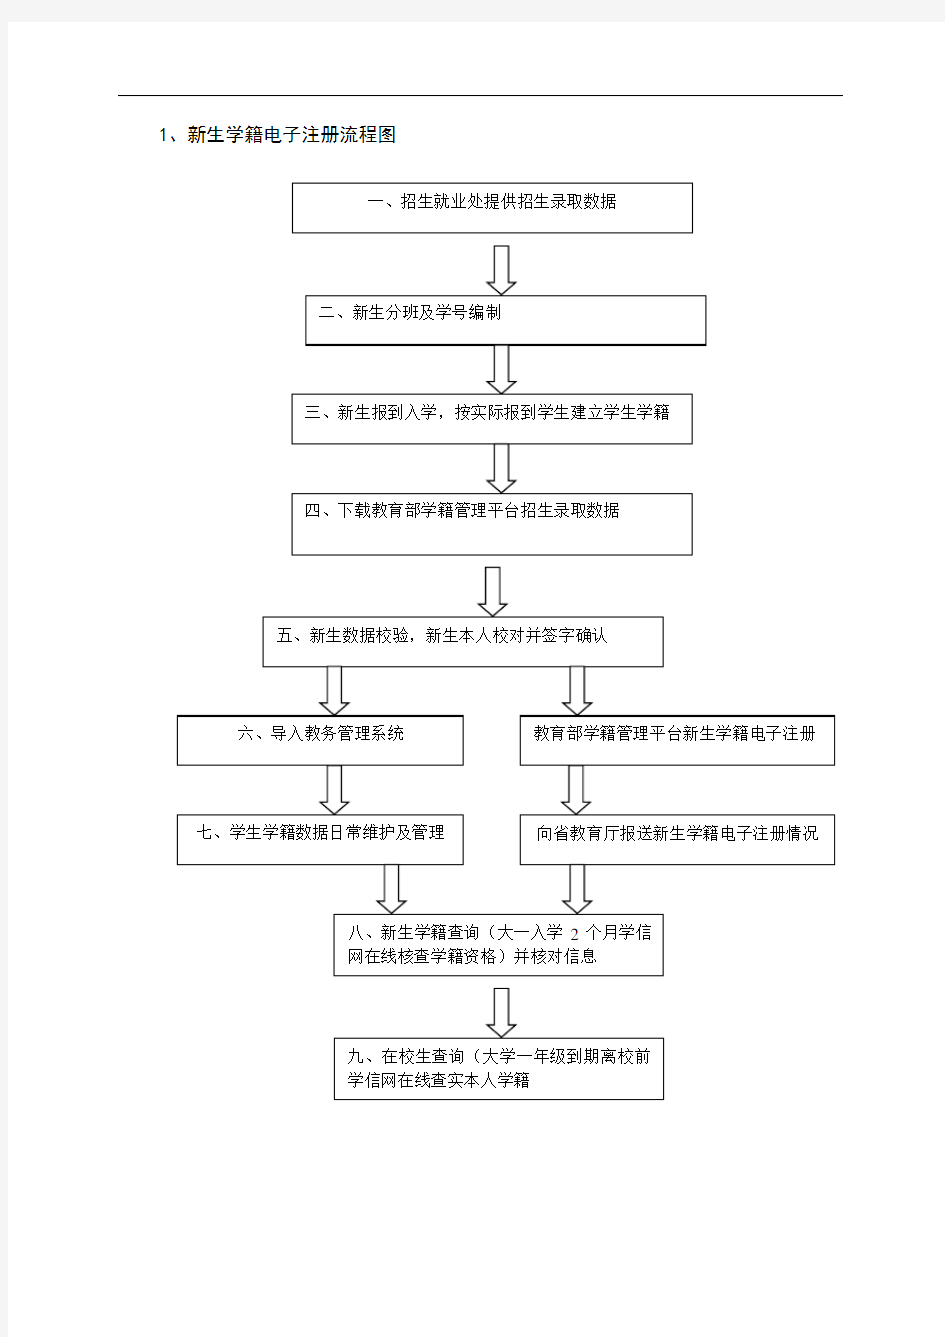 云南交通职业技术学院教学管理工作流程图